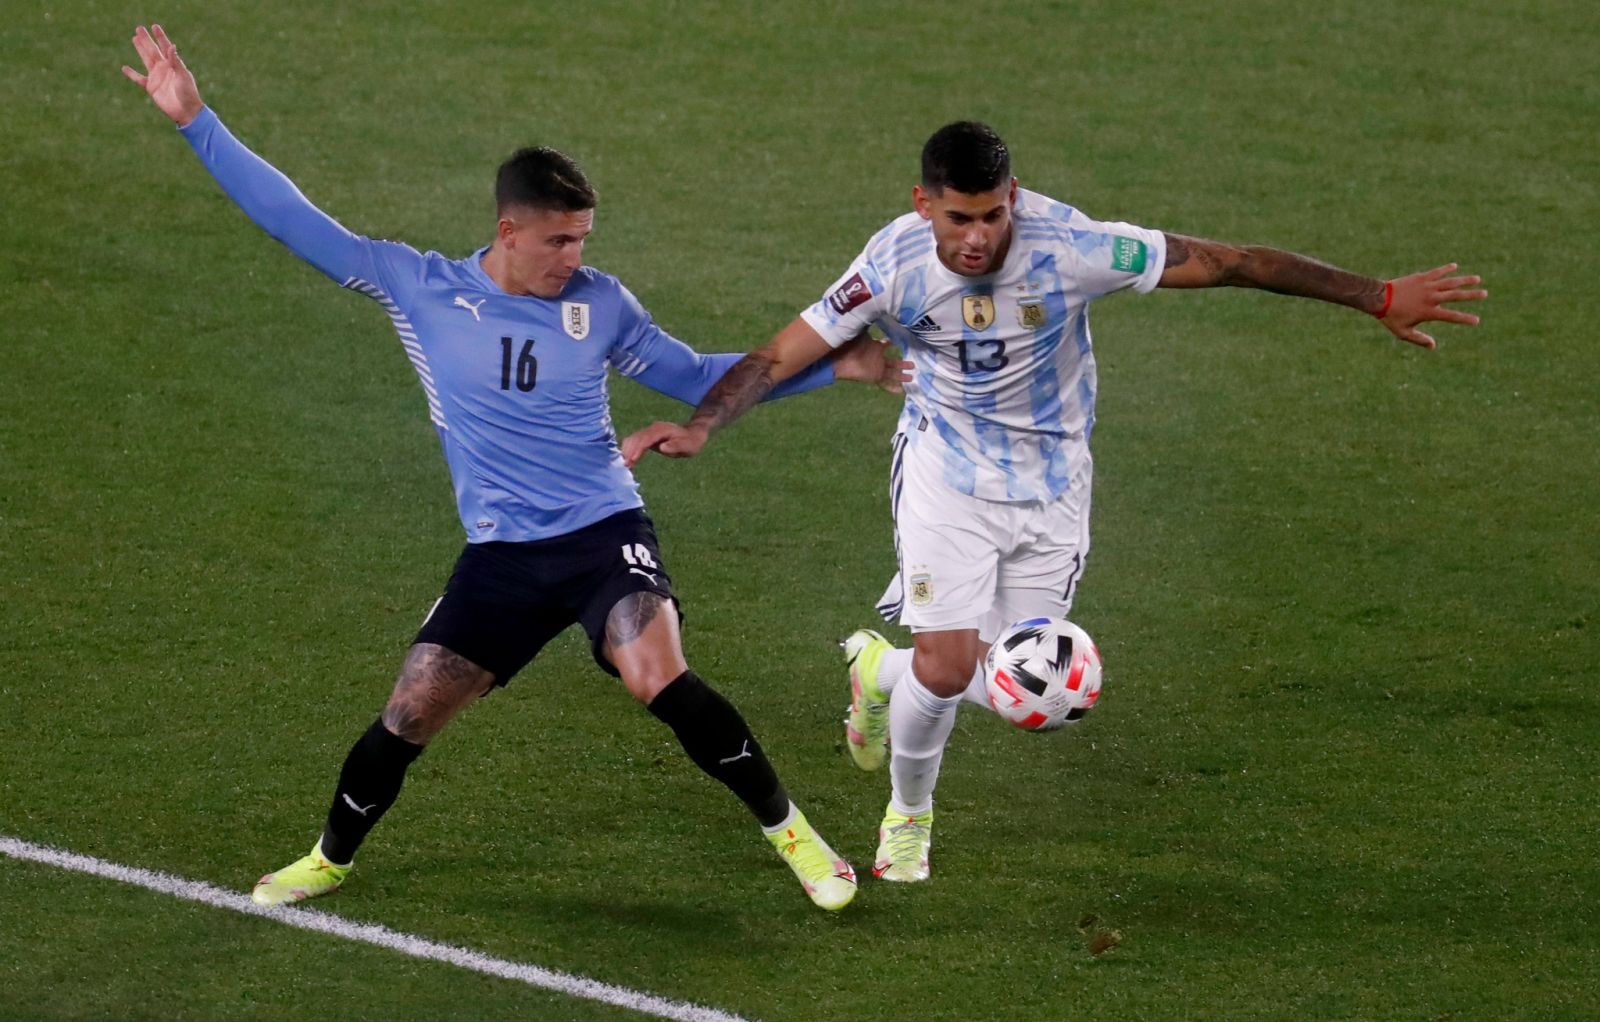 Thua trận, tuyển Uruguay (trái) vẫn đứng trong tình thế có thể bị mất suất dự World Cup 2022. AFP